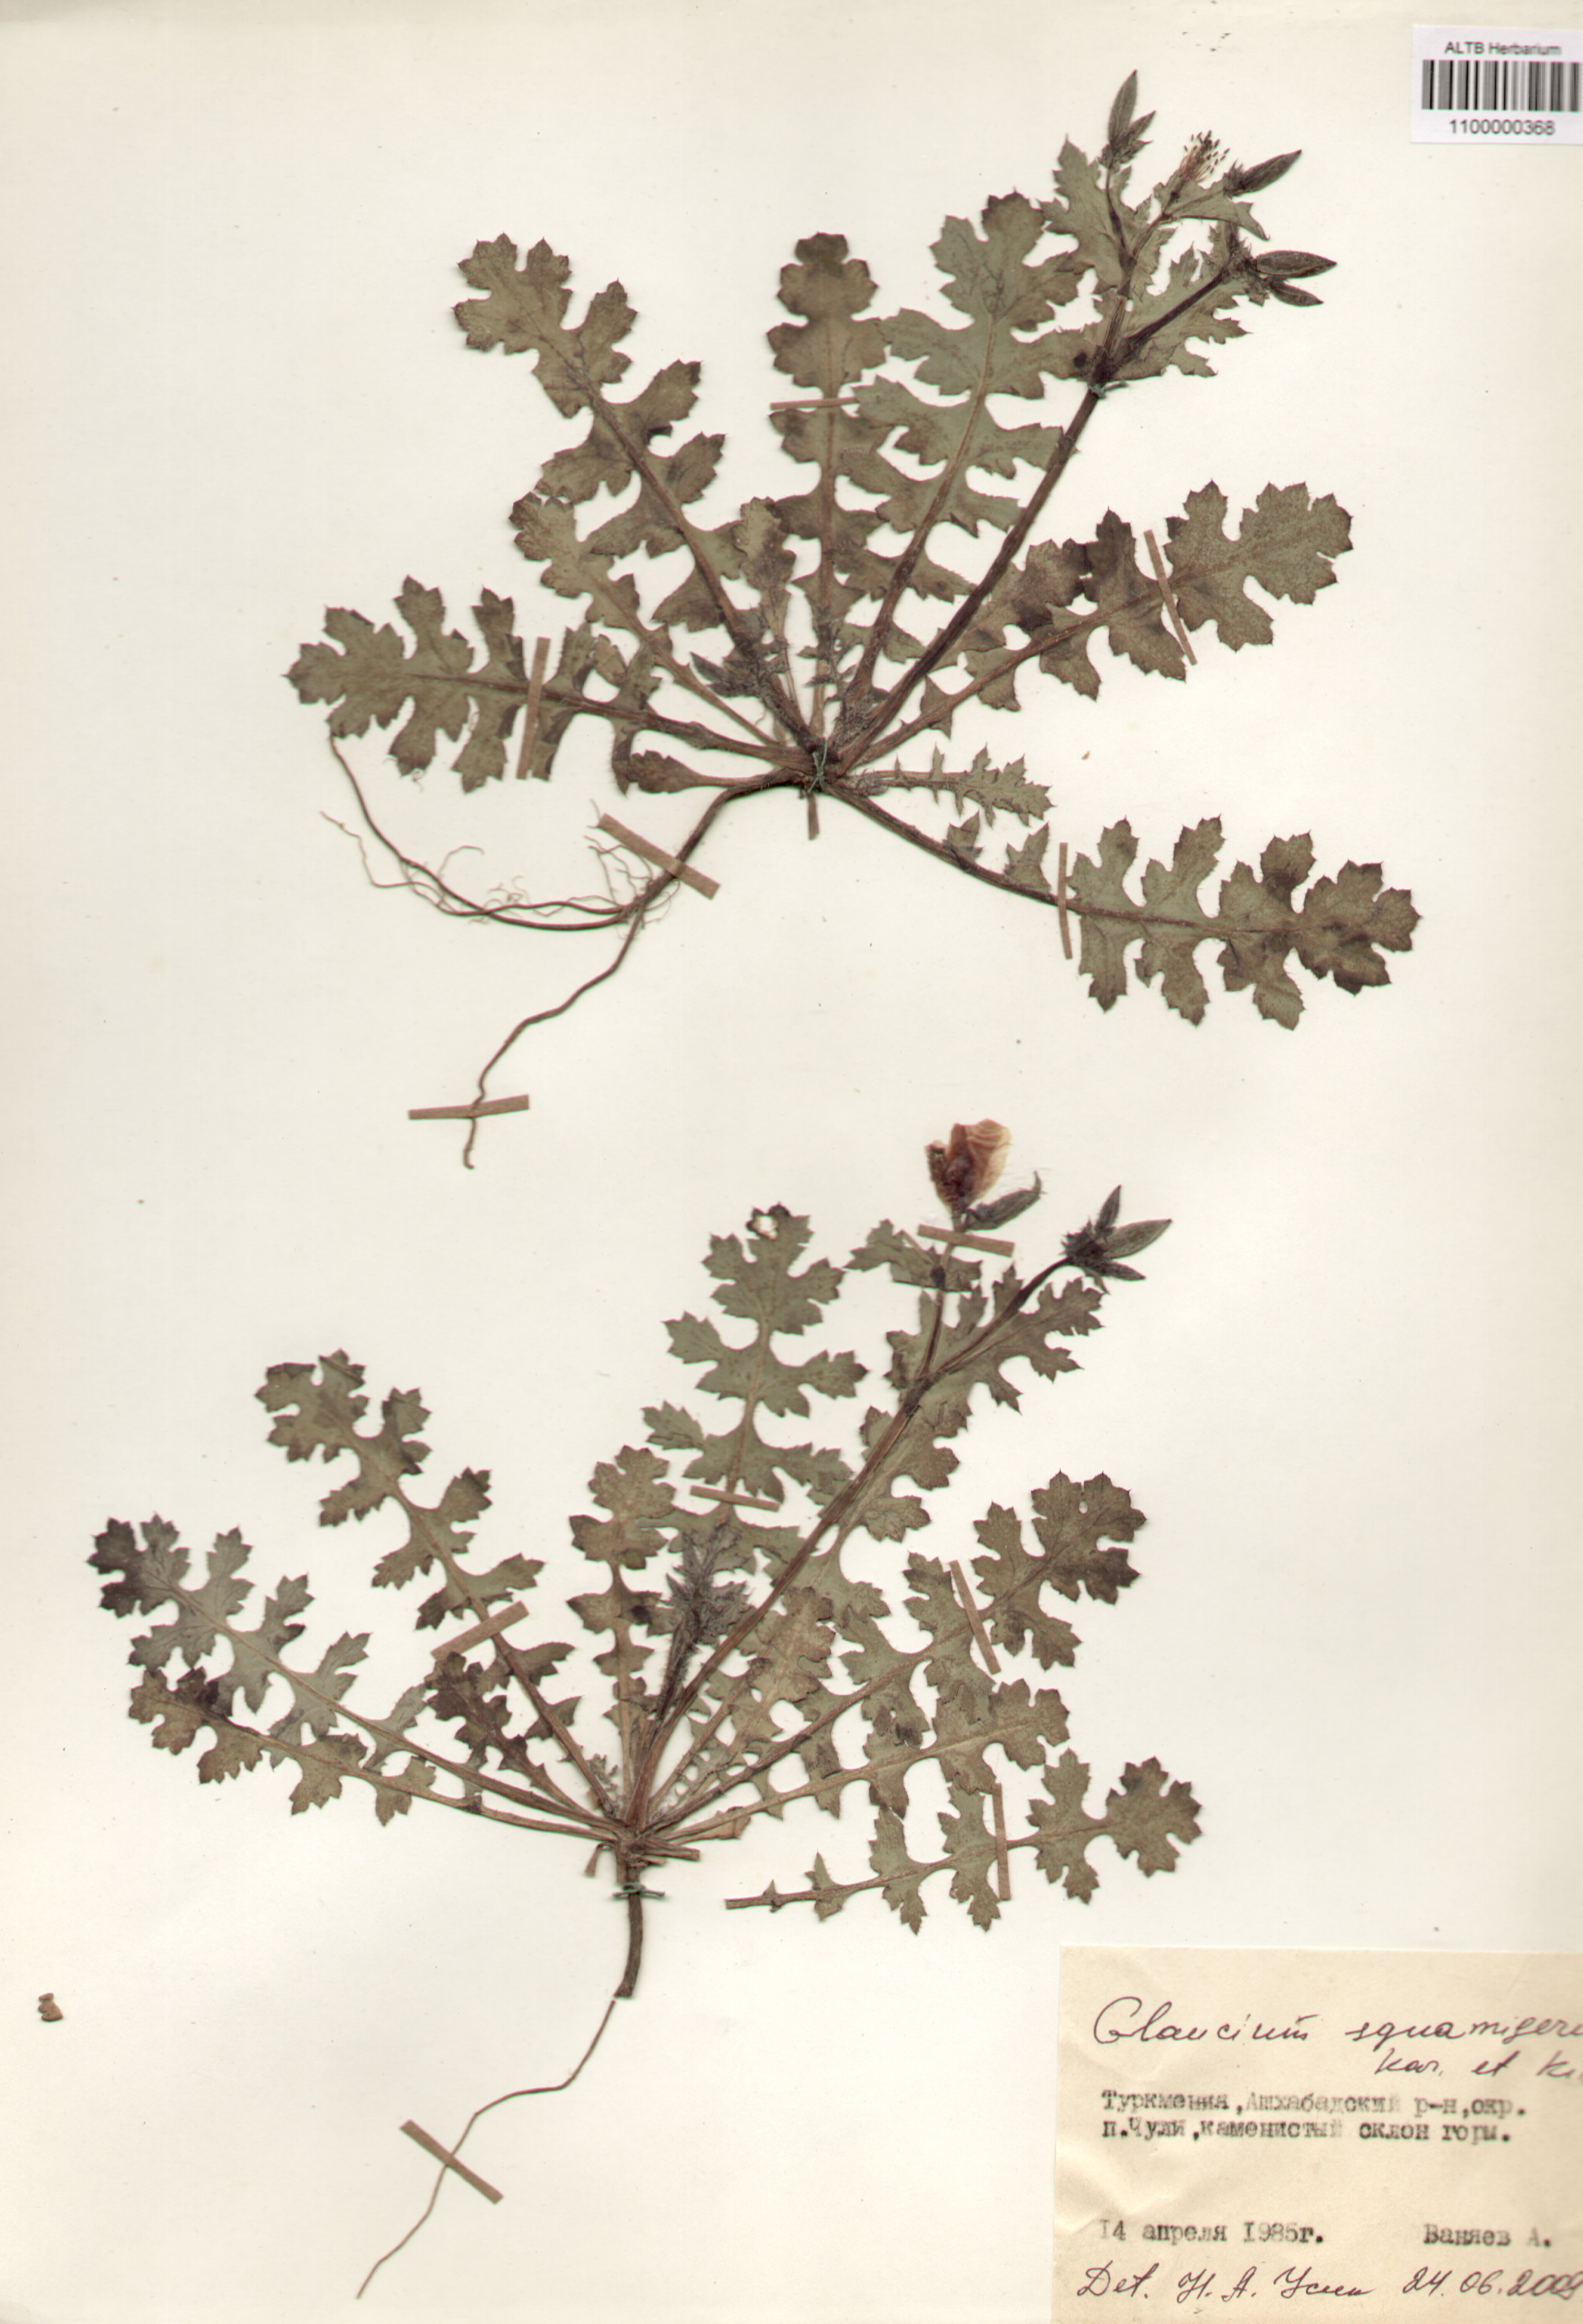 Papaveraceae,Glaucium squamigerum Kar. et Kir.